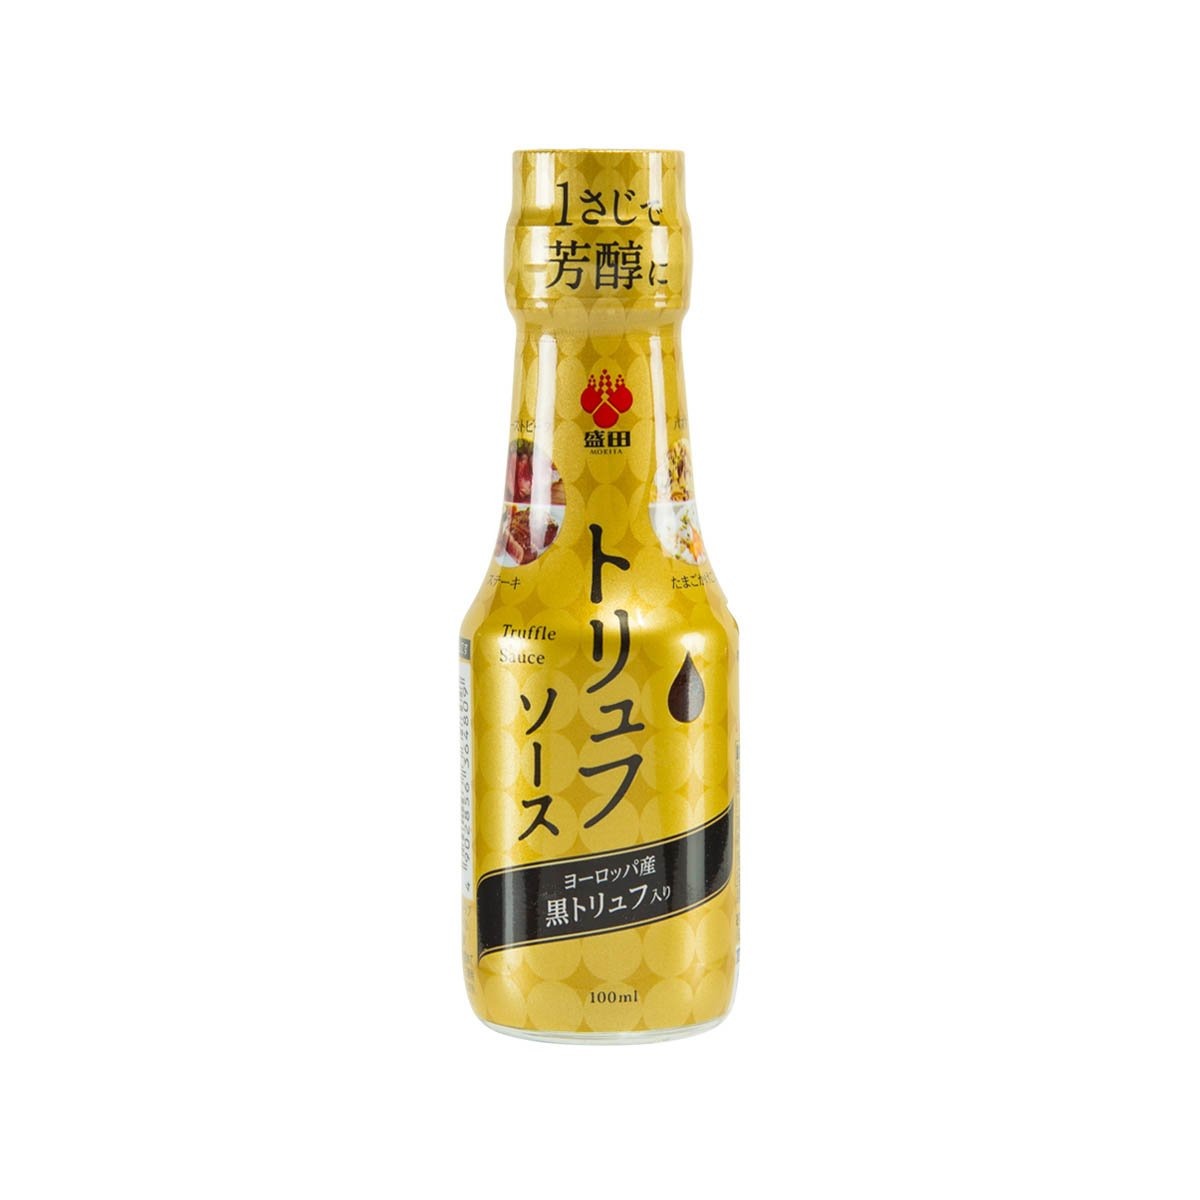 Morita Truffle Sauce - TokyoMarketPH